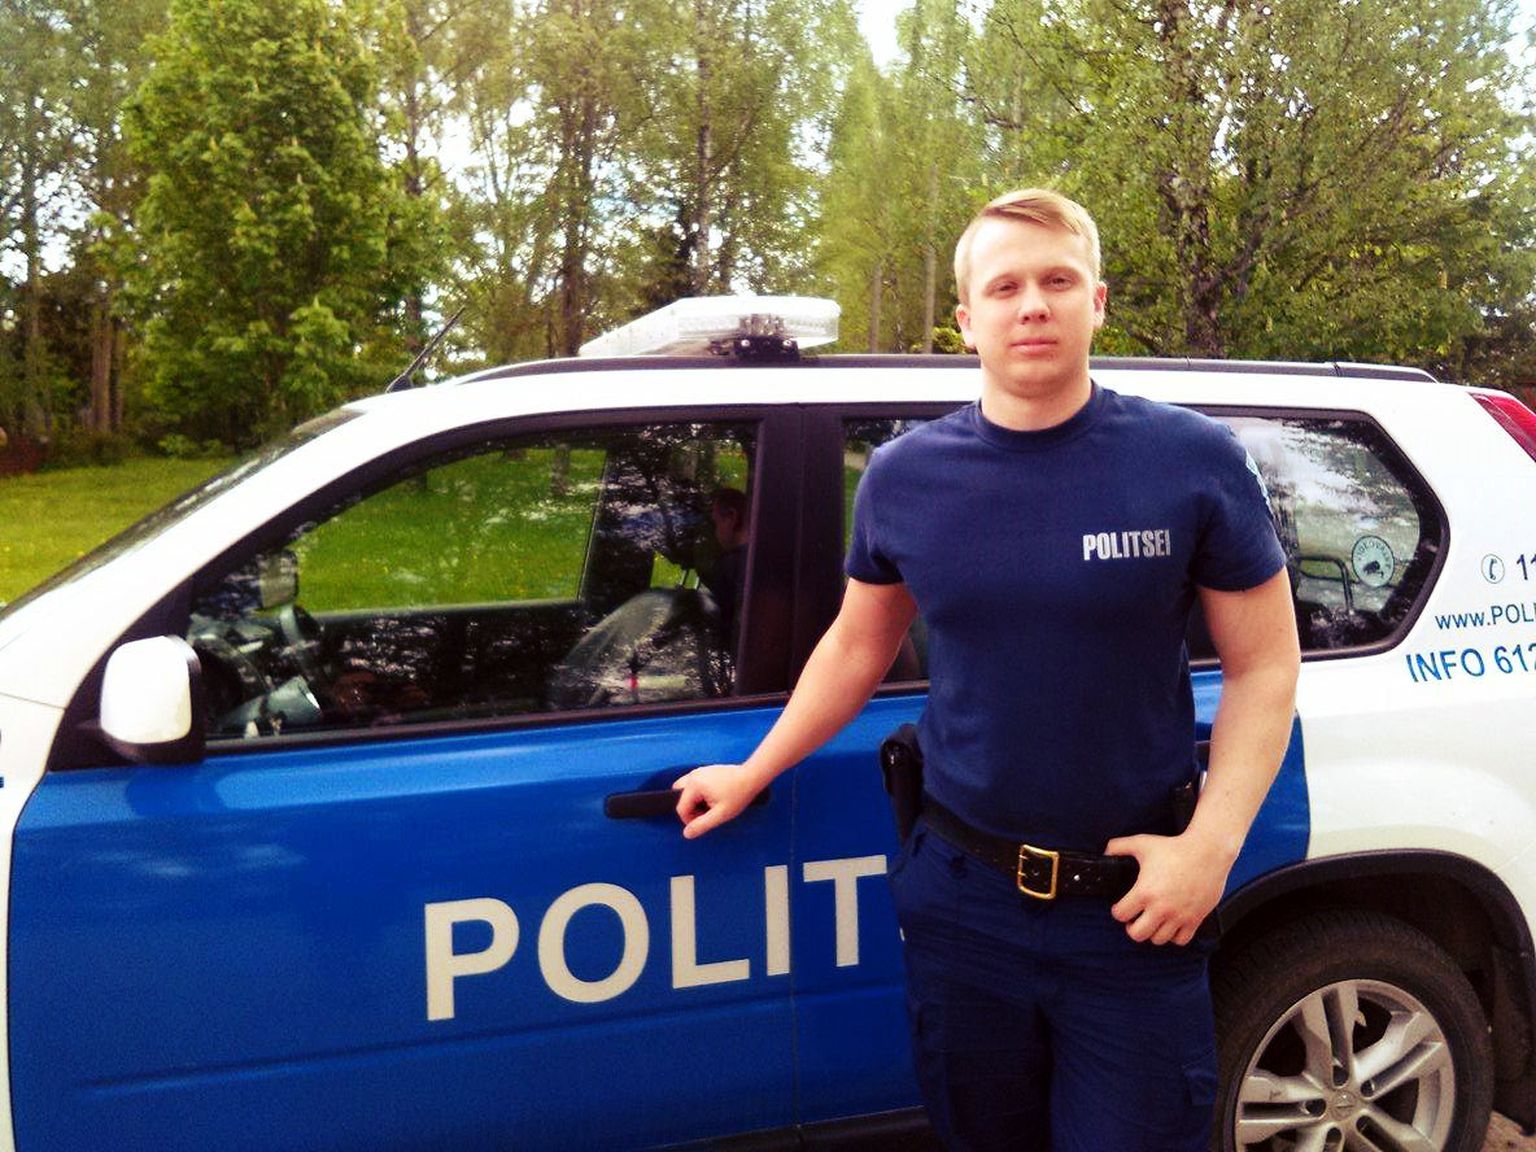 Otepää endine piirkonnapolitseinik Sander Karu on nüüd Põlva piirkonnavanem.